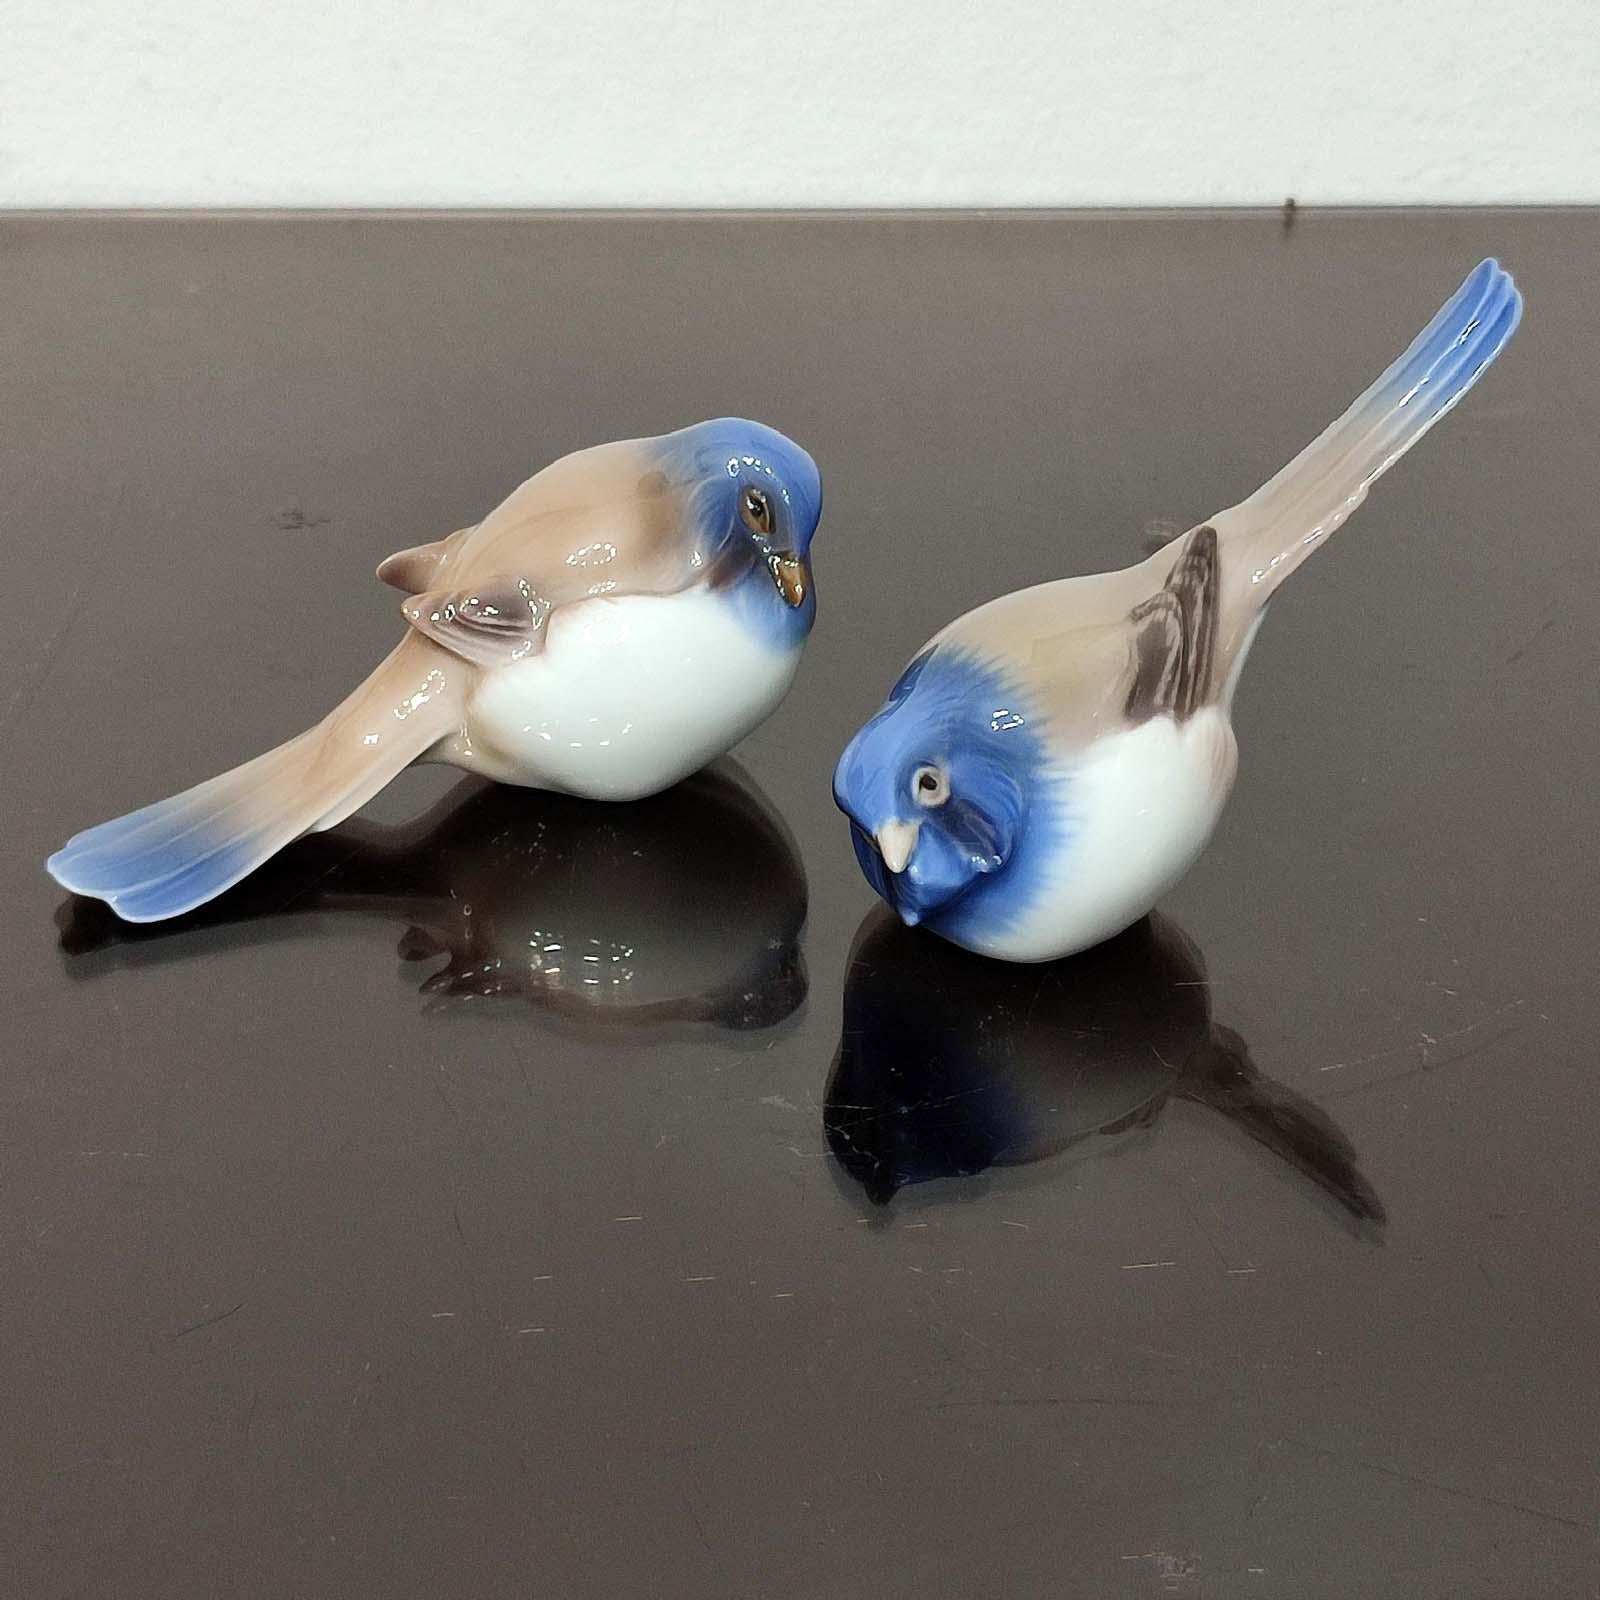 Paire d'oiseaux en porcelaine conçus par l'artiste danois Jens Peter Dahl Jensen et fabriqués à Copenhague par Bing & Grøndahl. Numéro de modèle : 1633 et 1635. Longueur 12 cm chacun.
On parle souvent de mésange optimiste, queue vers le haut, et de